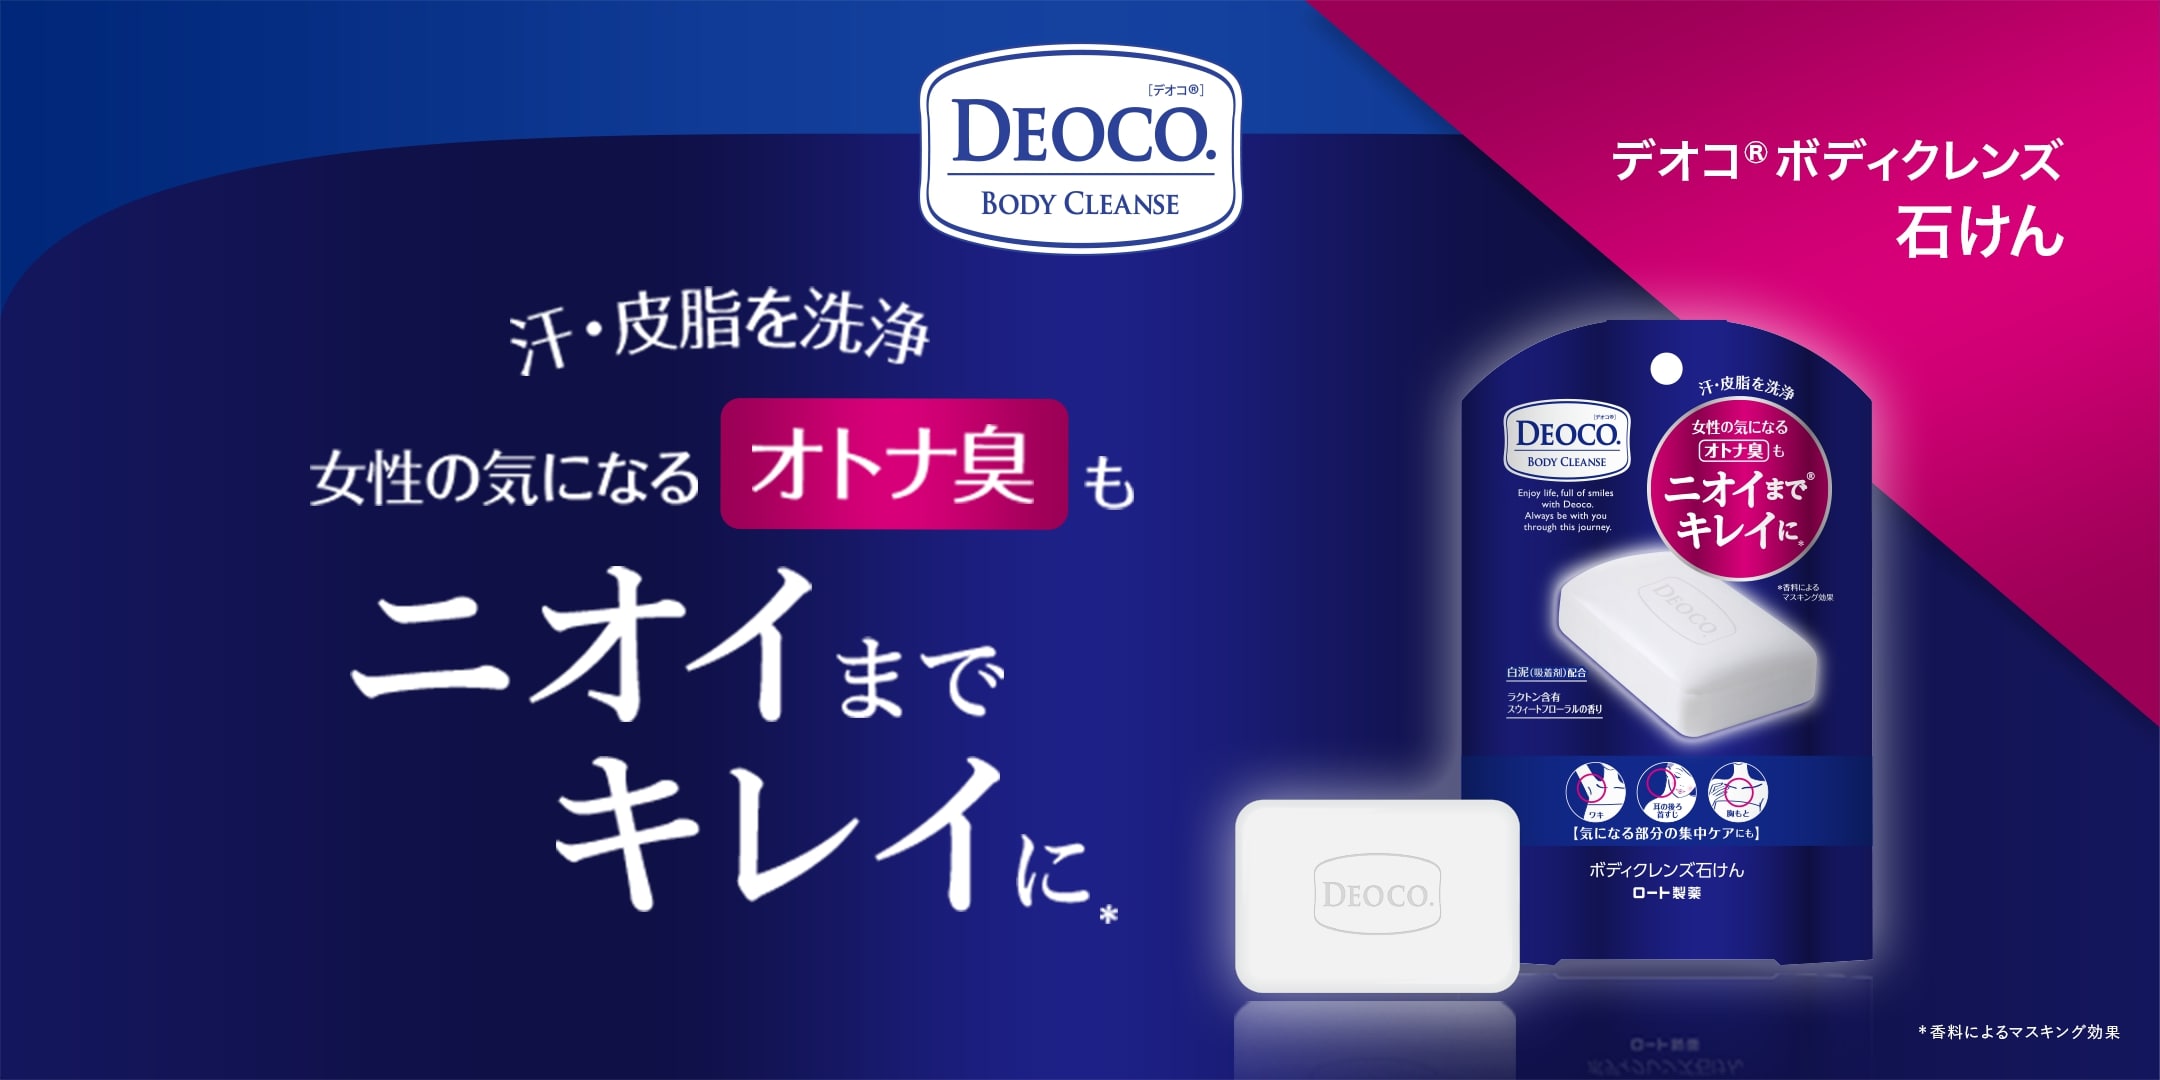 オトナの清潔感をつくるボディクレンズ＆制汗剤。deoco® | ロート製薬: 商品情報サイト